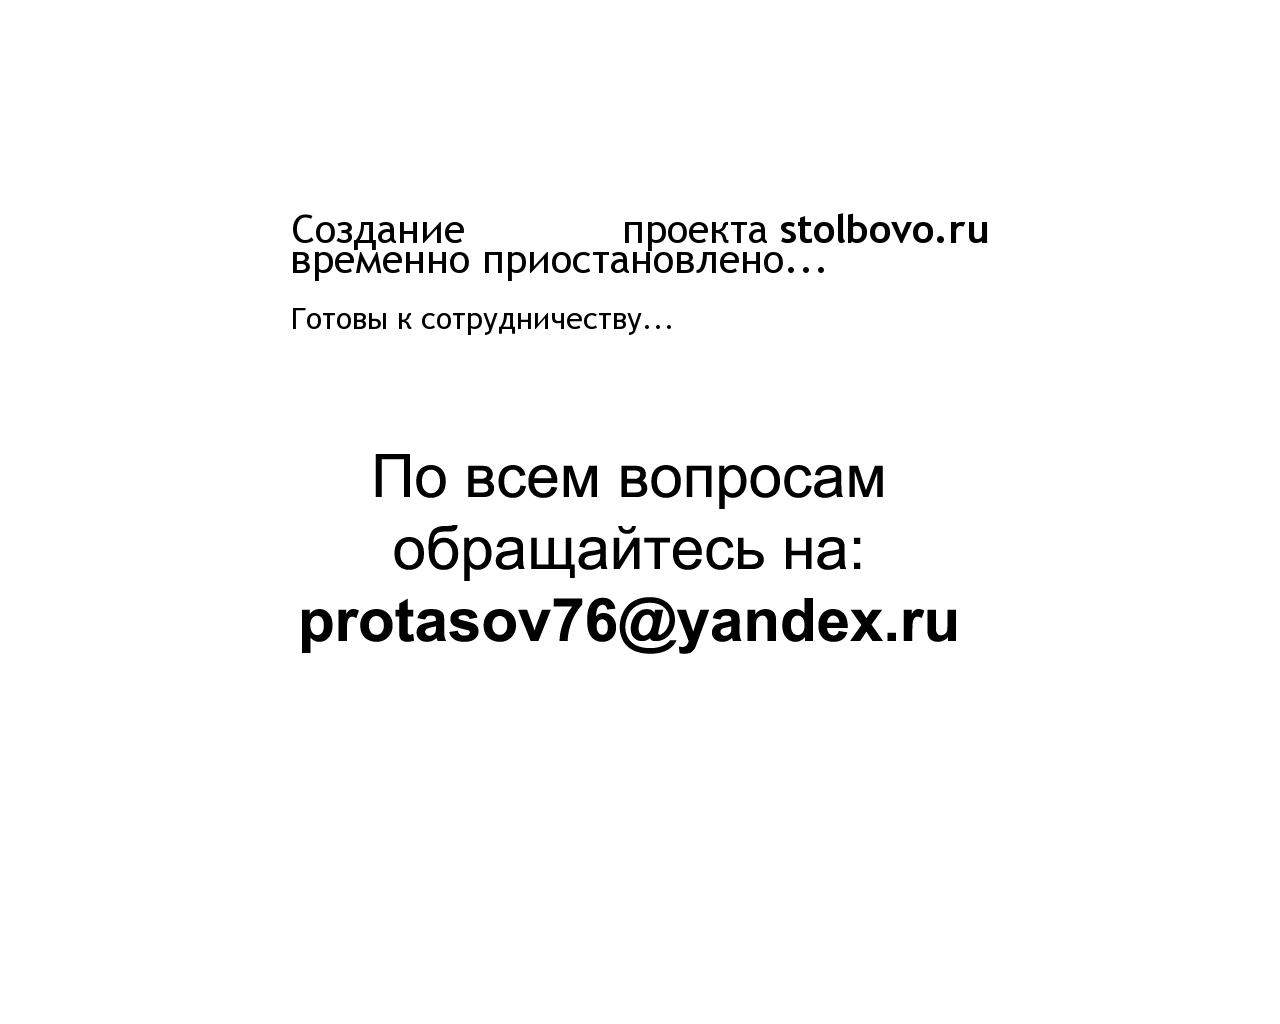 Изображение сайта stolbovo.ru в разрешении 1280x1024